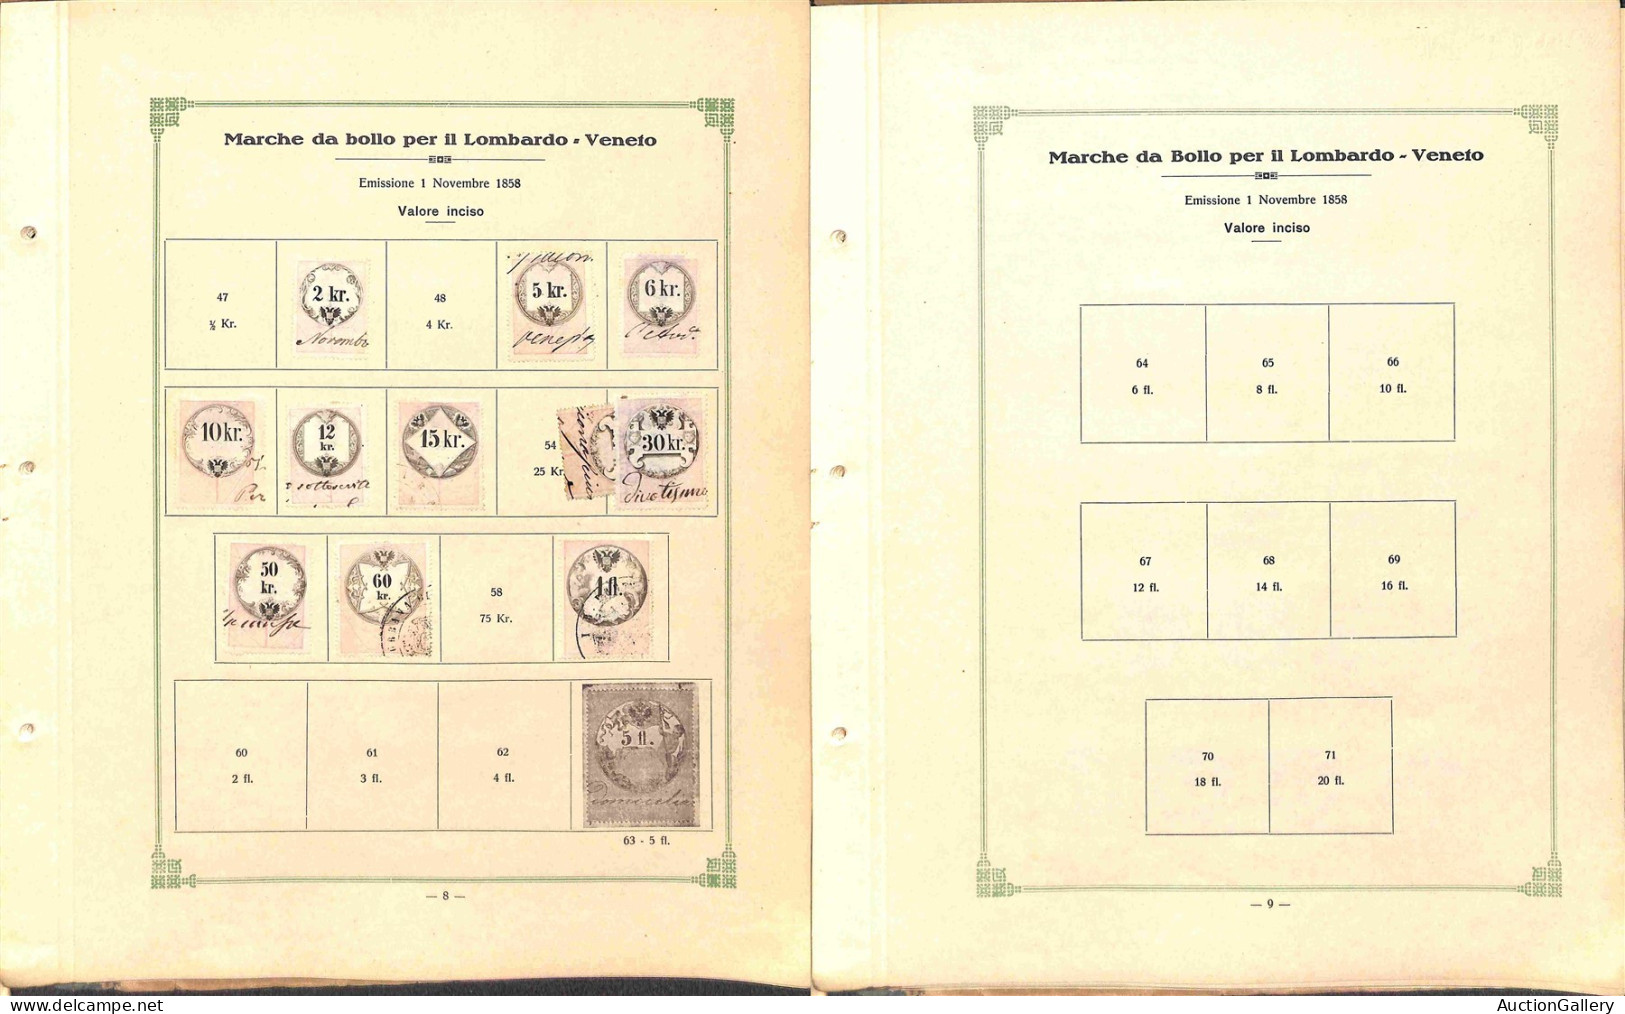 Lotti&Collezioni - LOMBARDO VENETO - Marche da Bollo - 1854/1870 - Album catalogo delle marche da bollo a cura di F. Luc